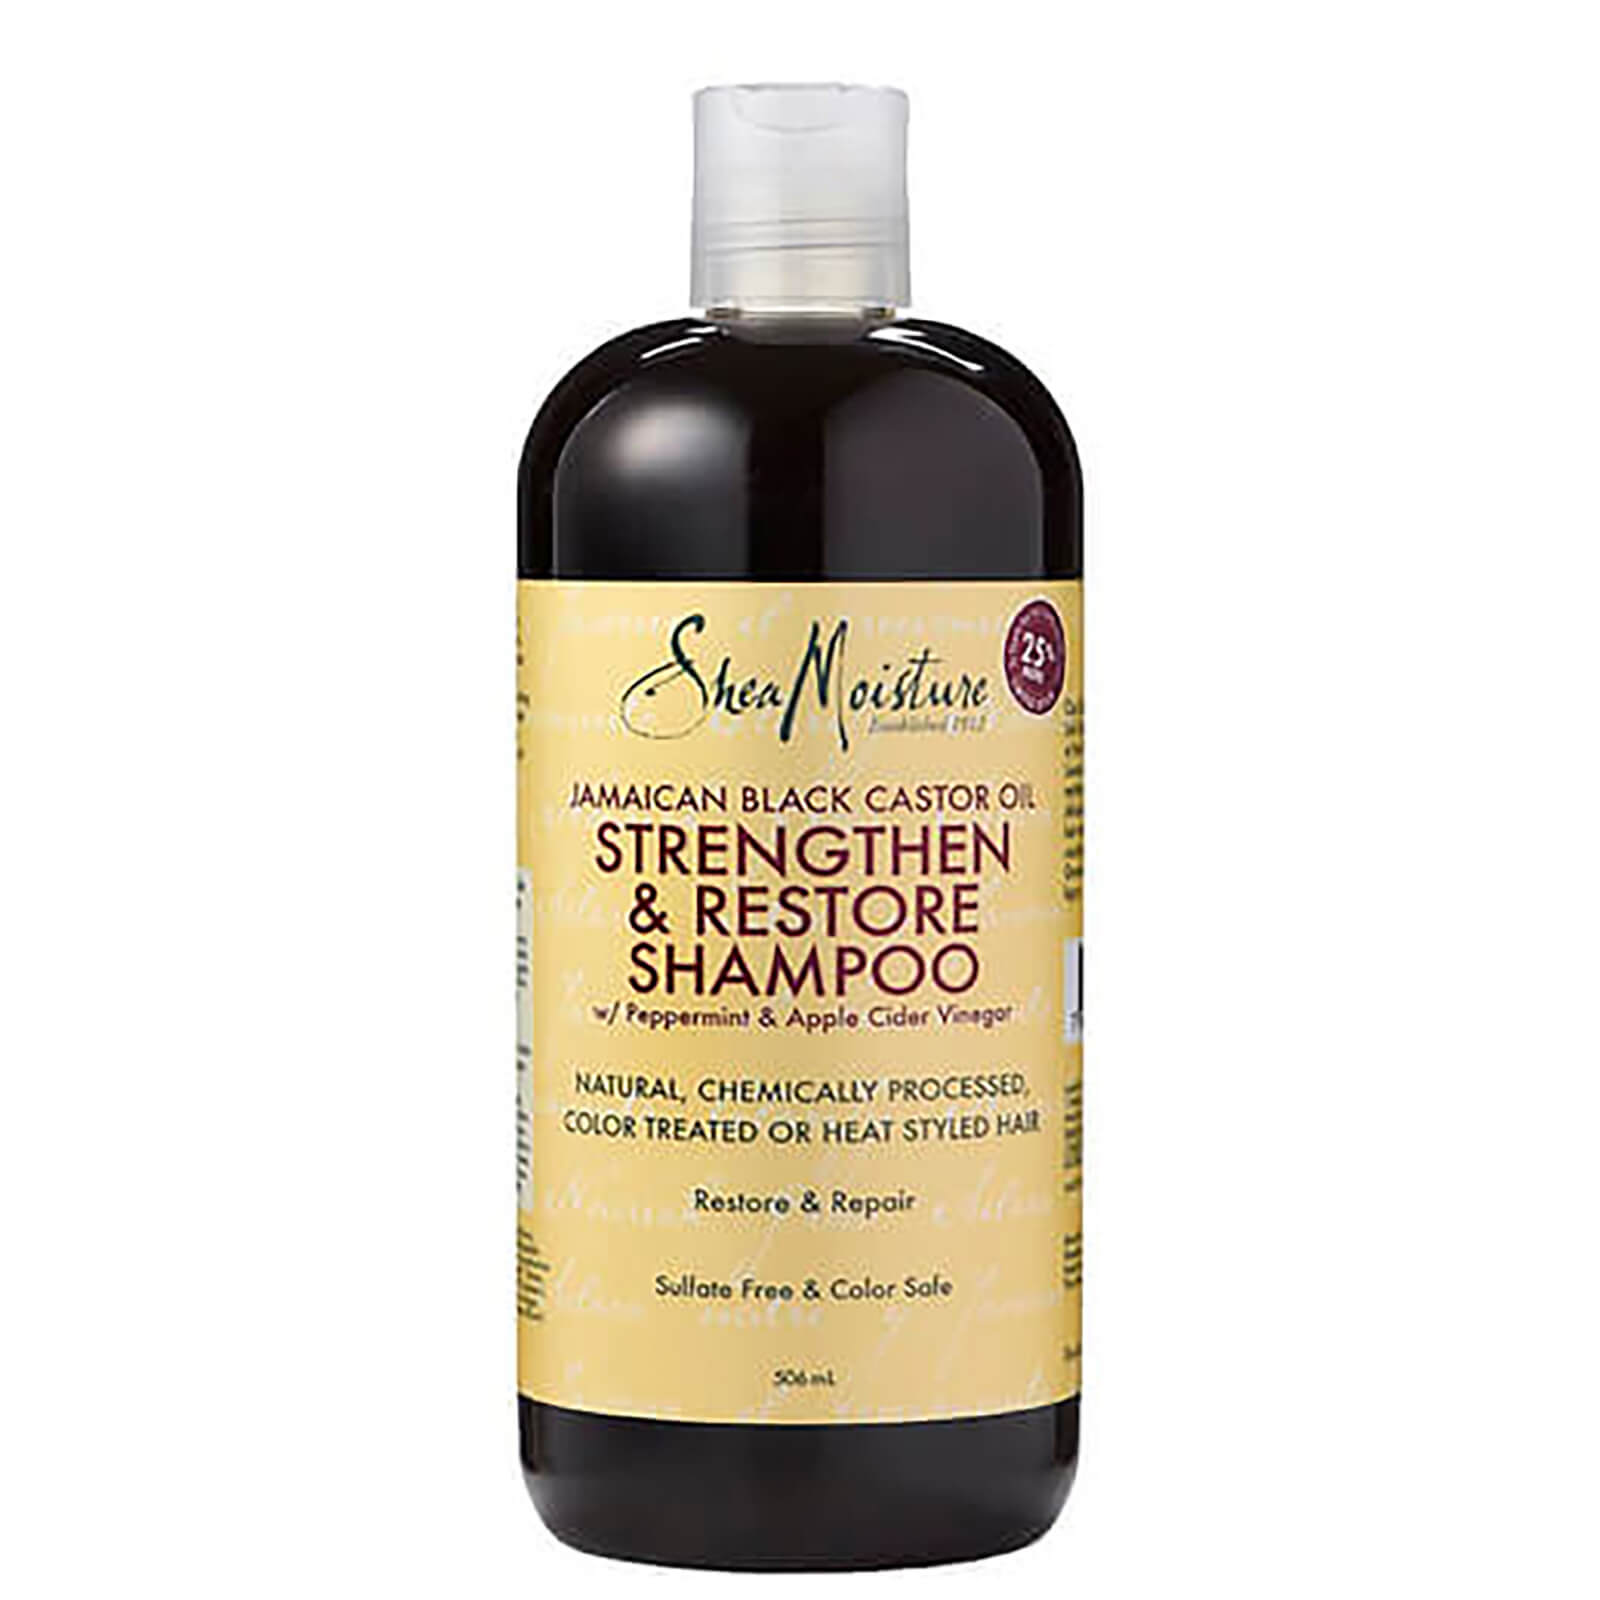 anti-hair loss shampoos in singapore